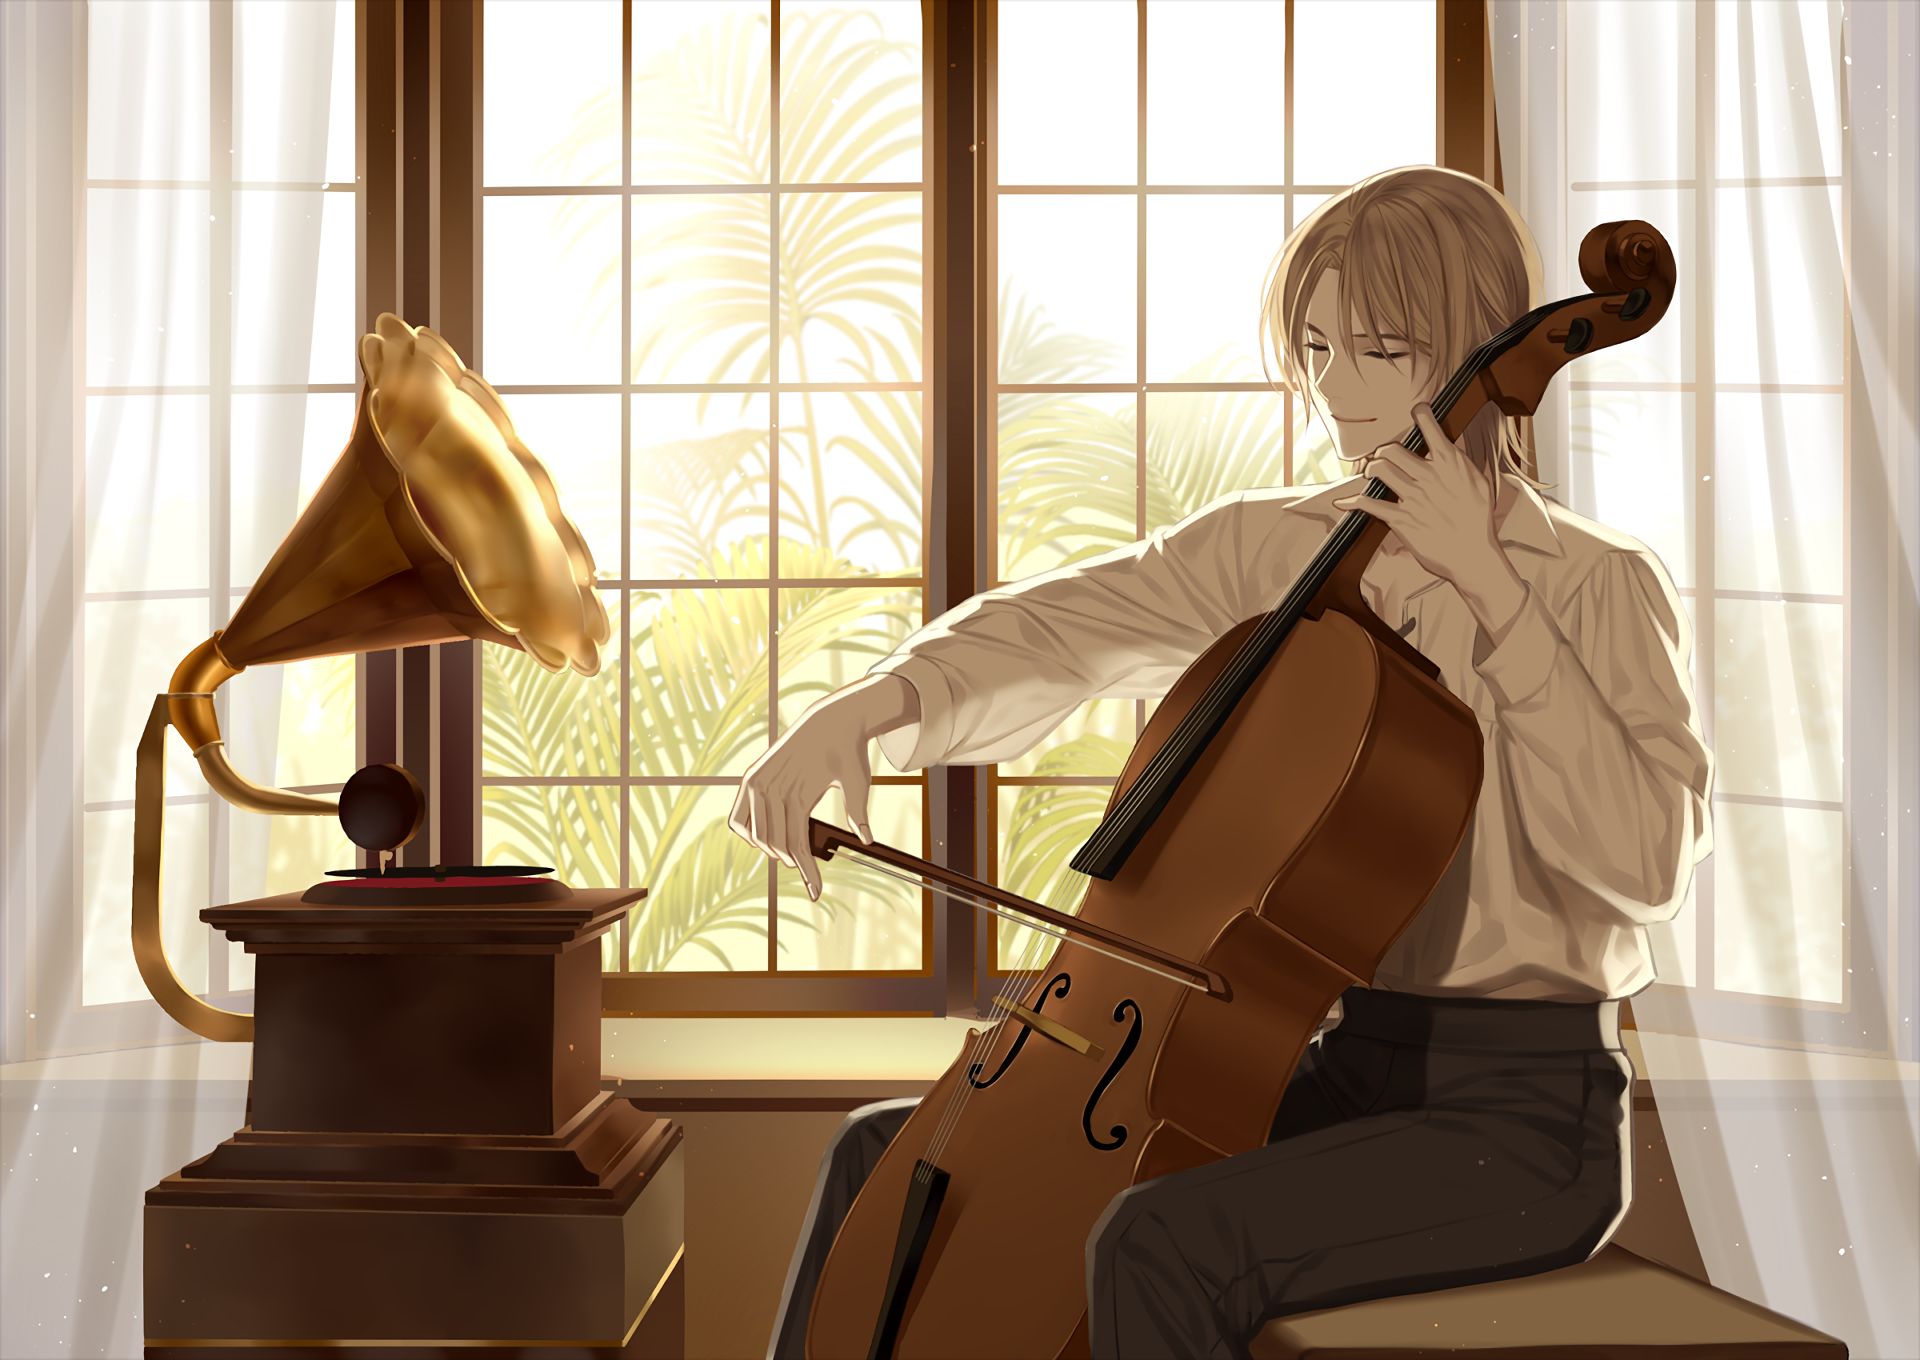 Cello : r/bakashinji